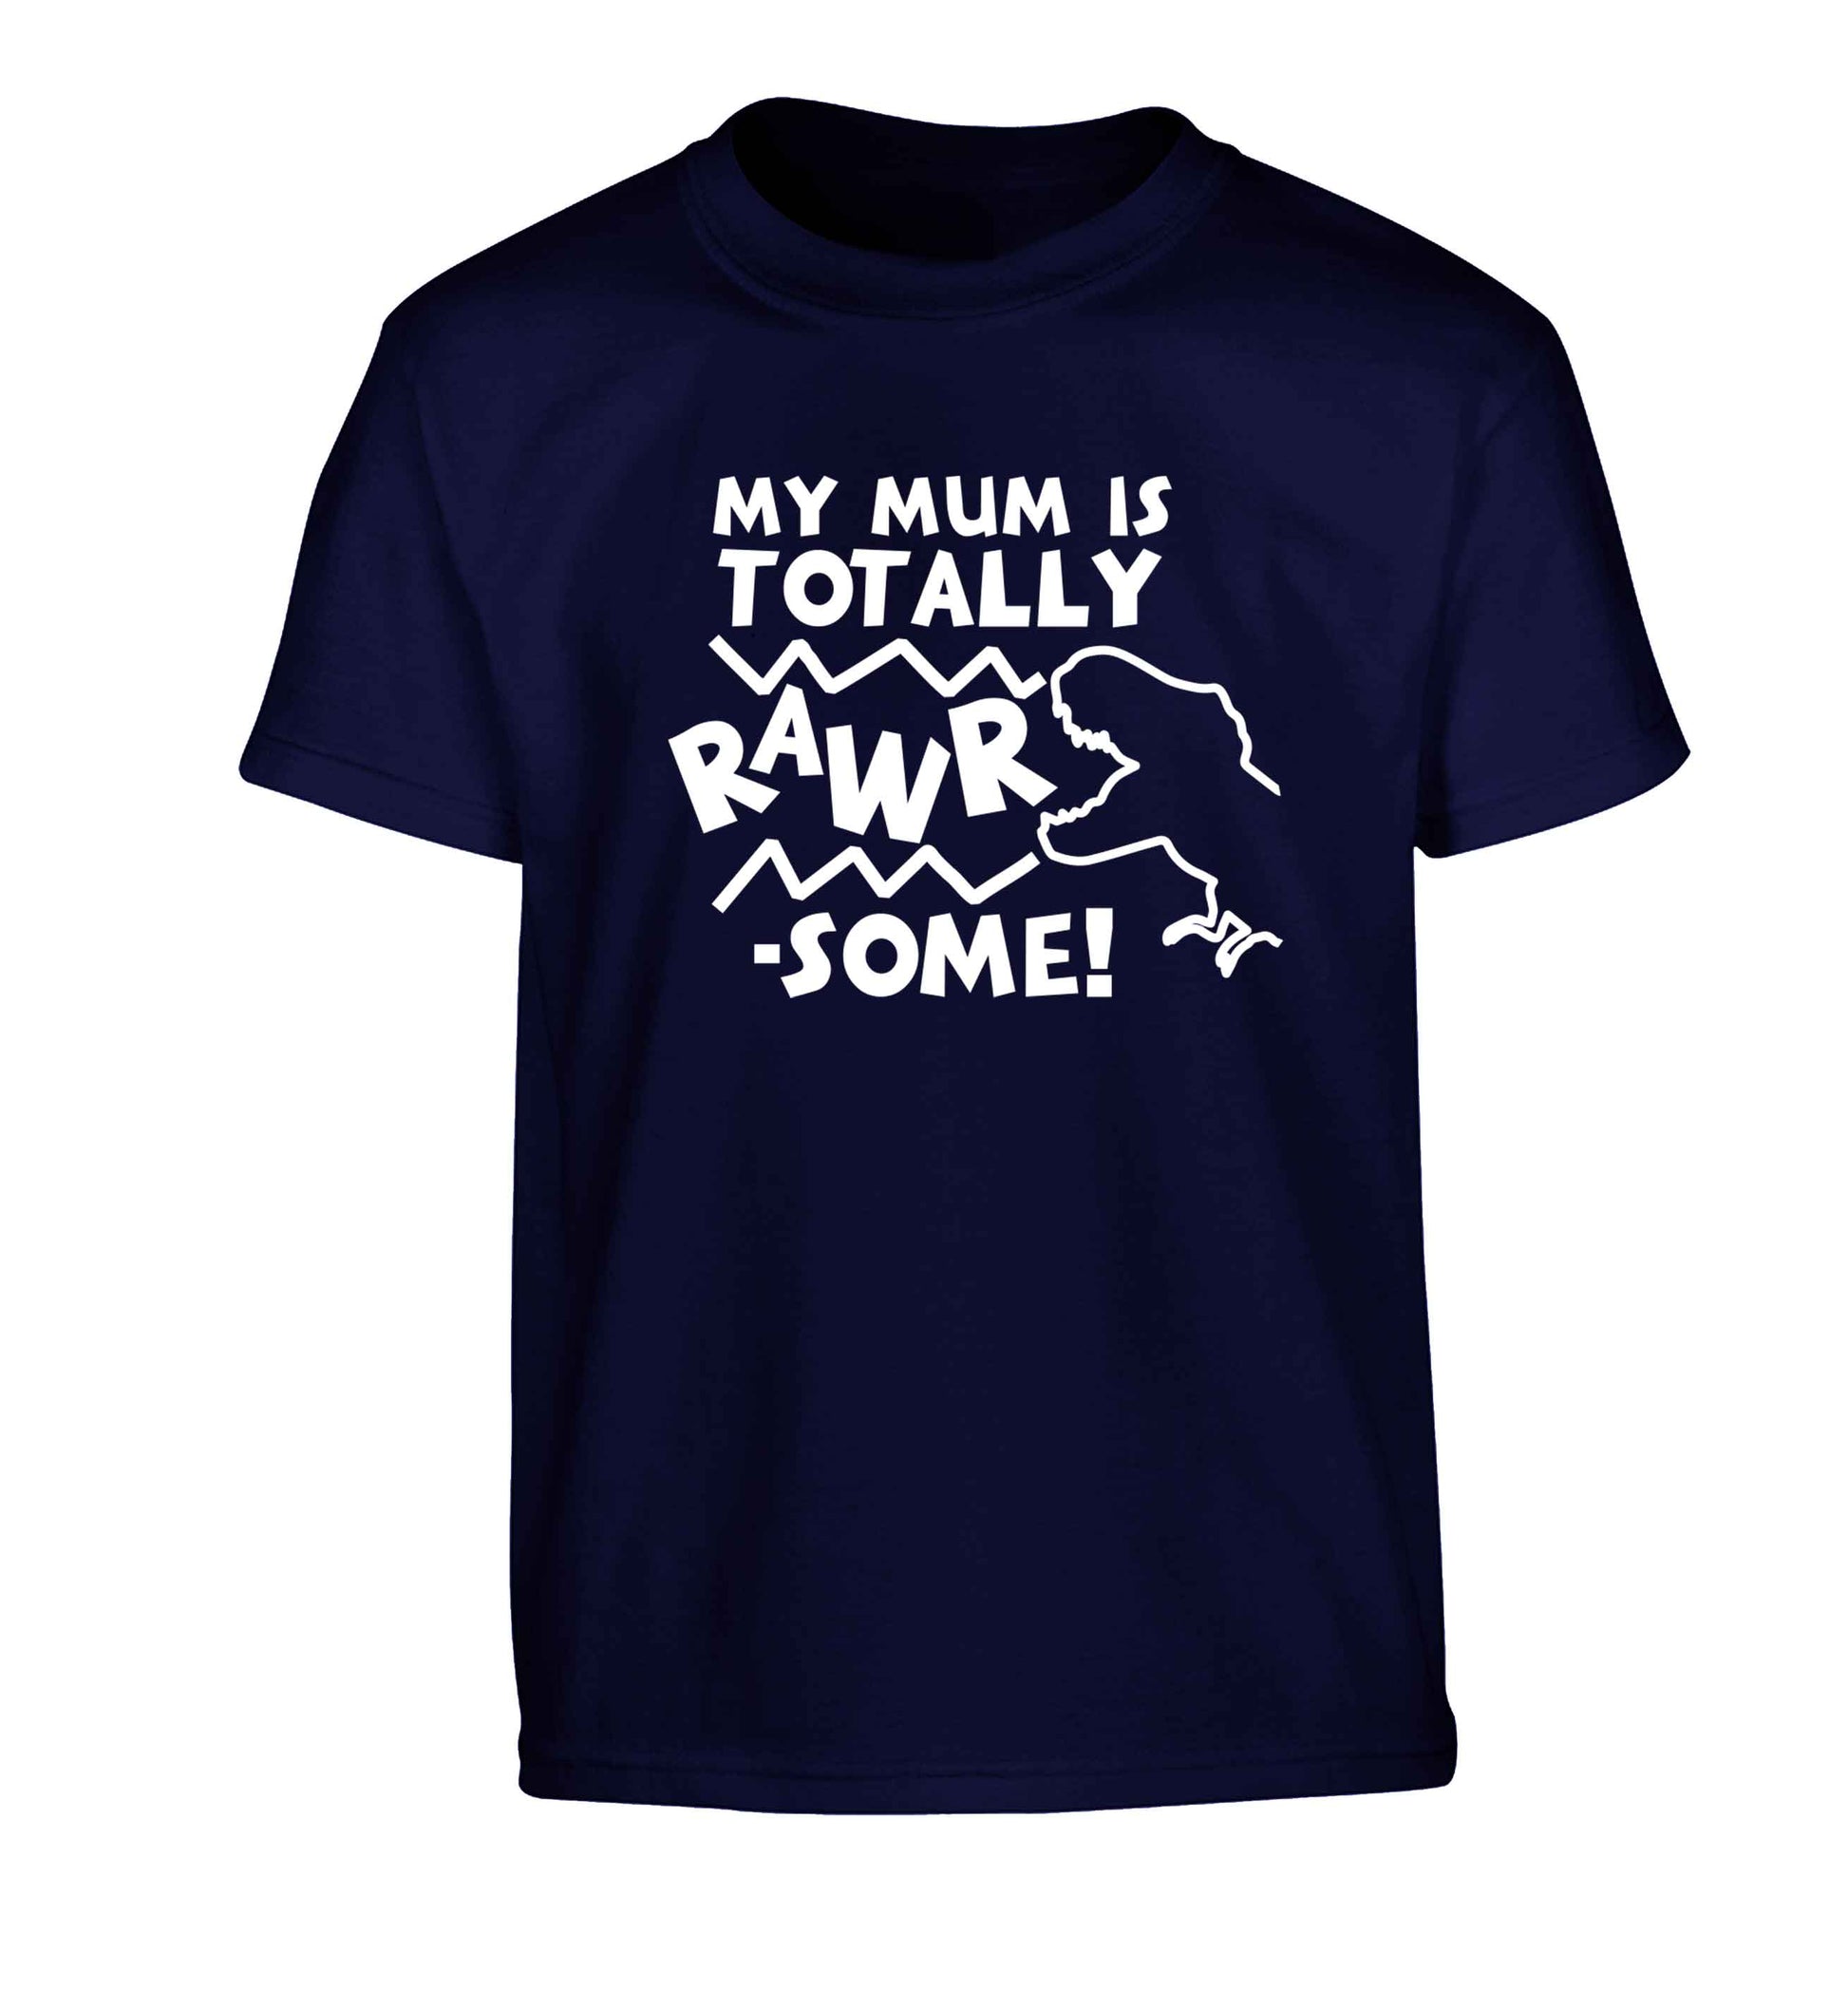 My mum is totally rawrsome Children's navy Tshirt 12-13 Years